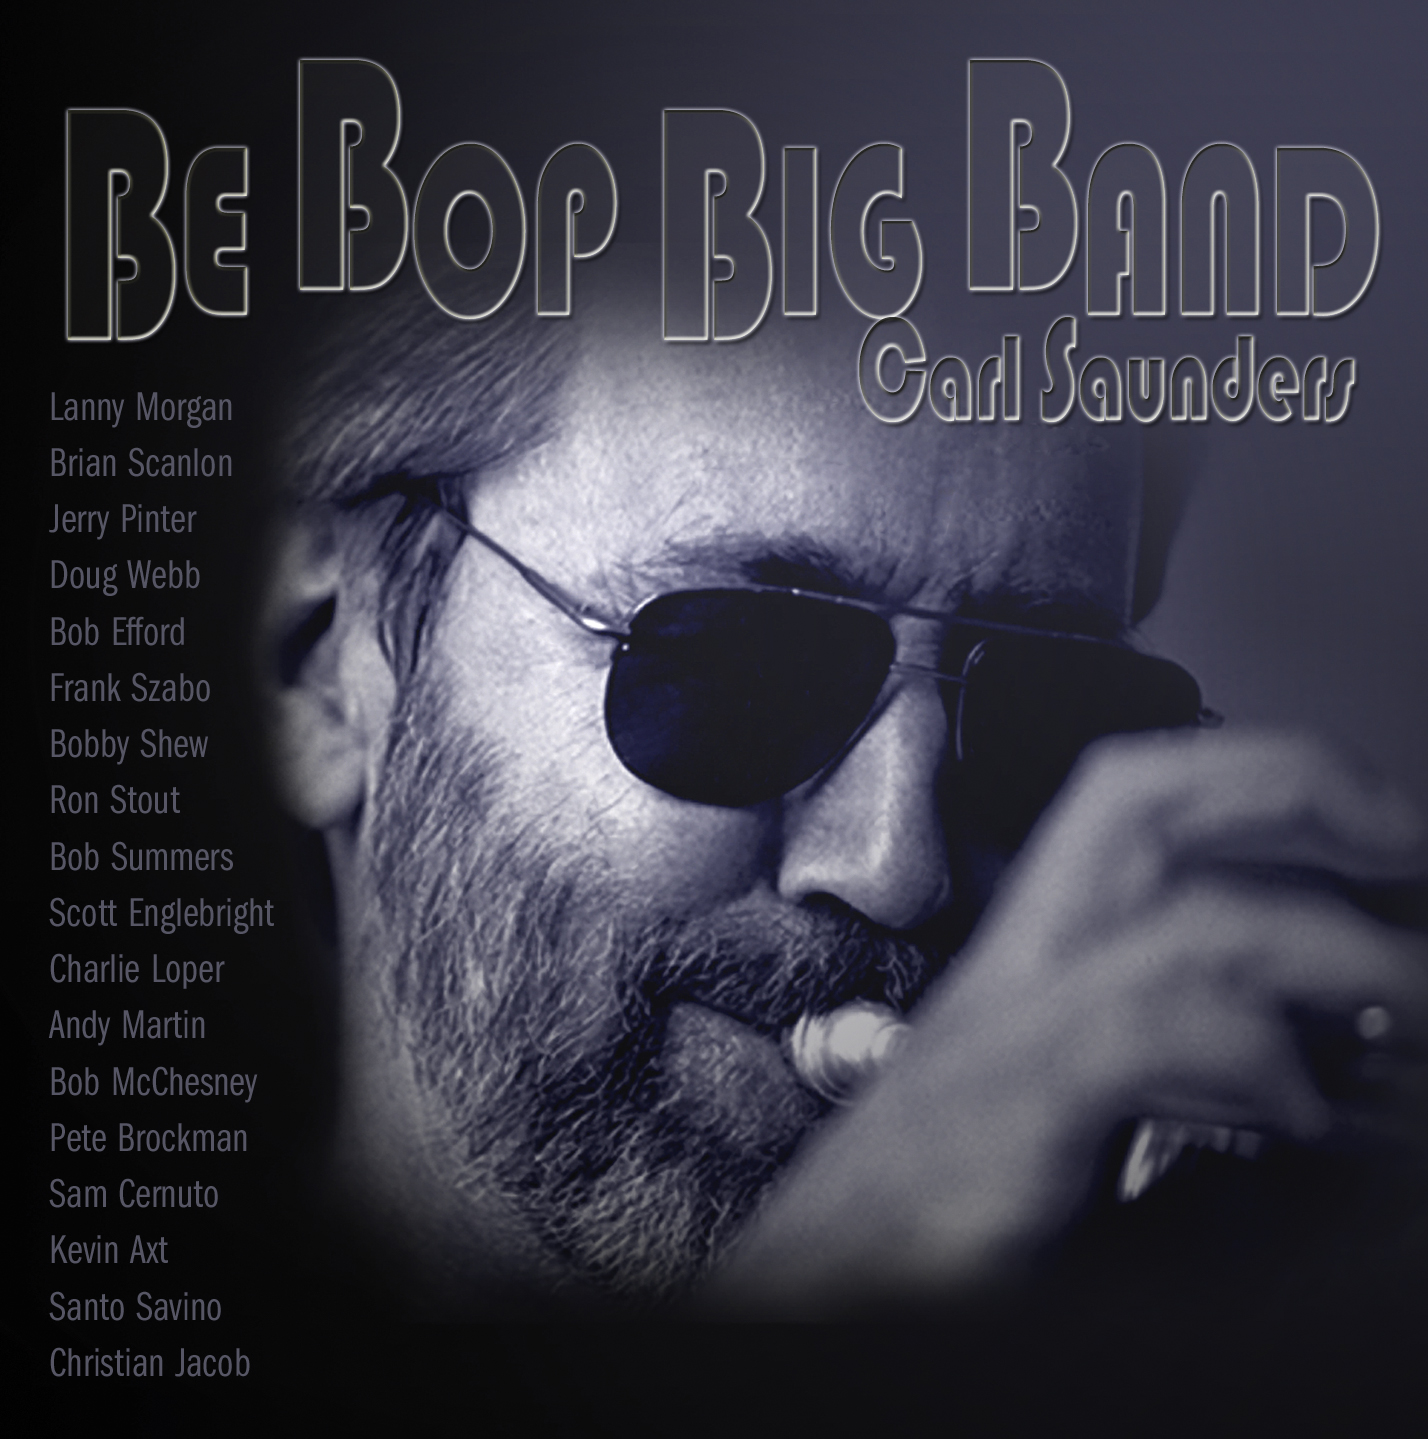 Be-Bop-Big-Band-CD-Cover.jpg